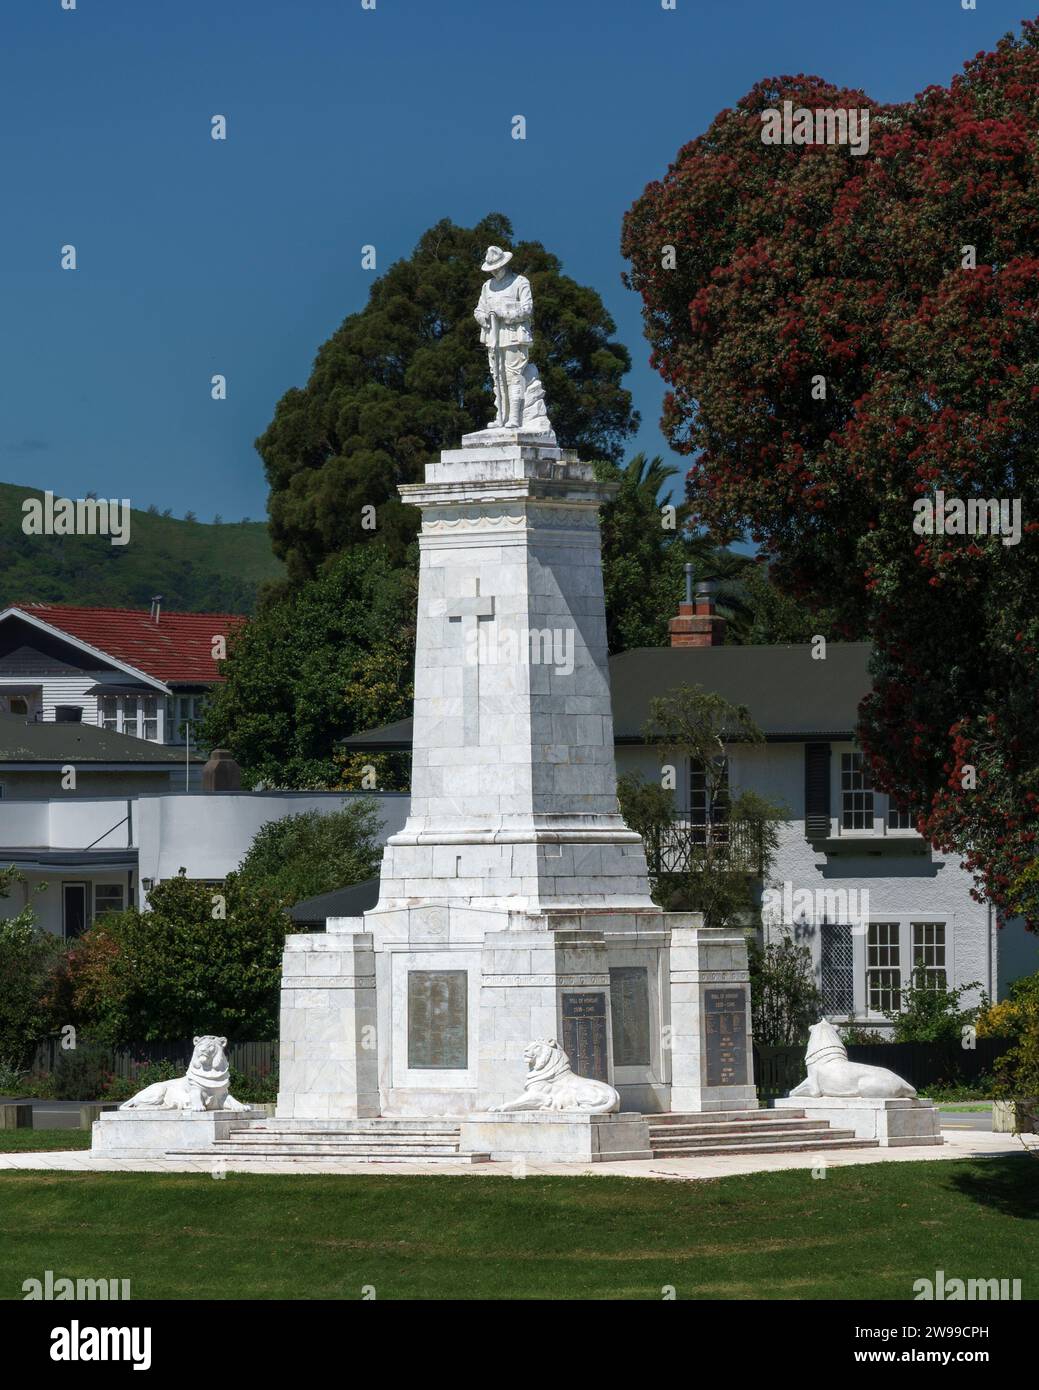 Das Gisborne war Memorial ist ein Denkmal für Soldaten aus der Gegend von Gisborne, die im Ersten Weltkrieg starben Sie wurde 1923 mit Namen von 575 Mann geweiht. Fo Stockfoto